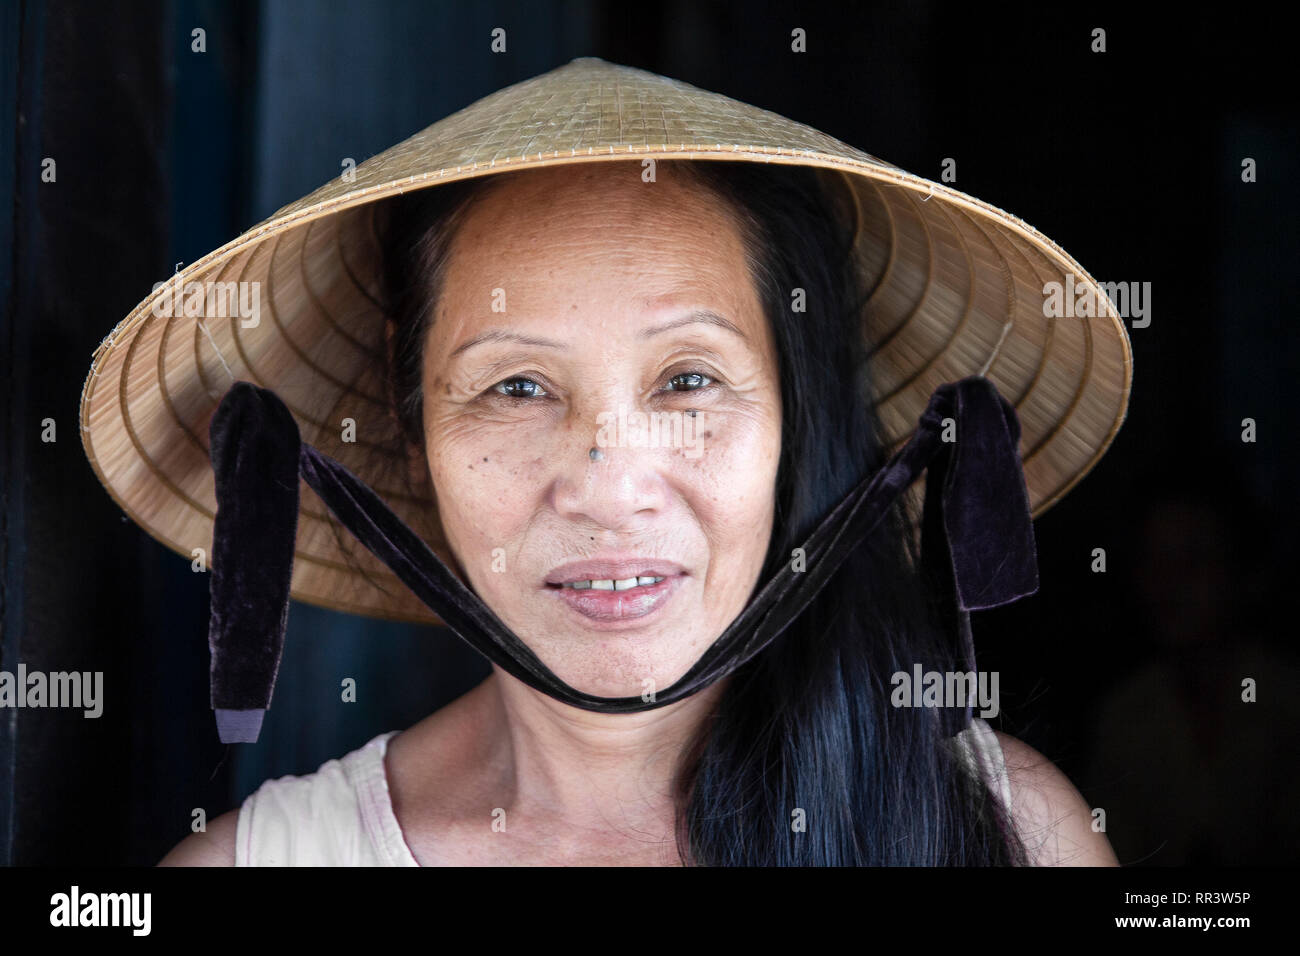 Cara closeup retrato de mujer vistiendo sombrero cónico de Vietnam Foto de stock